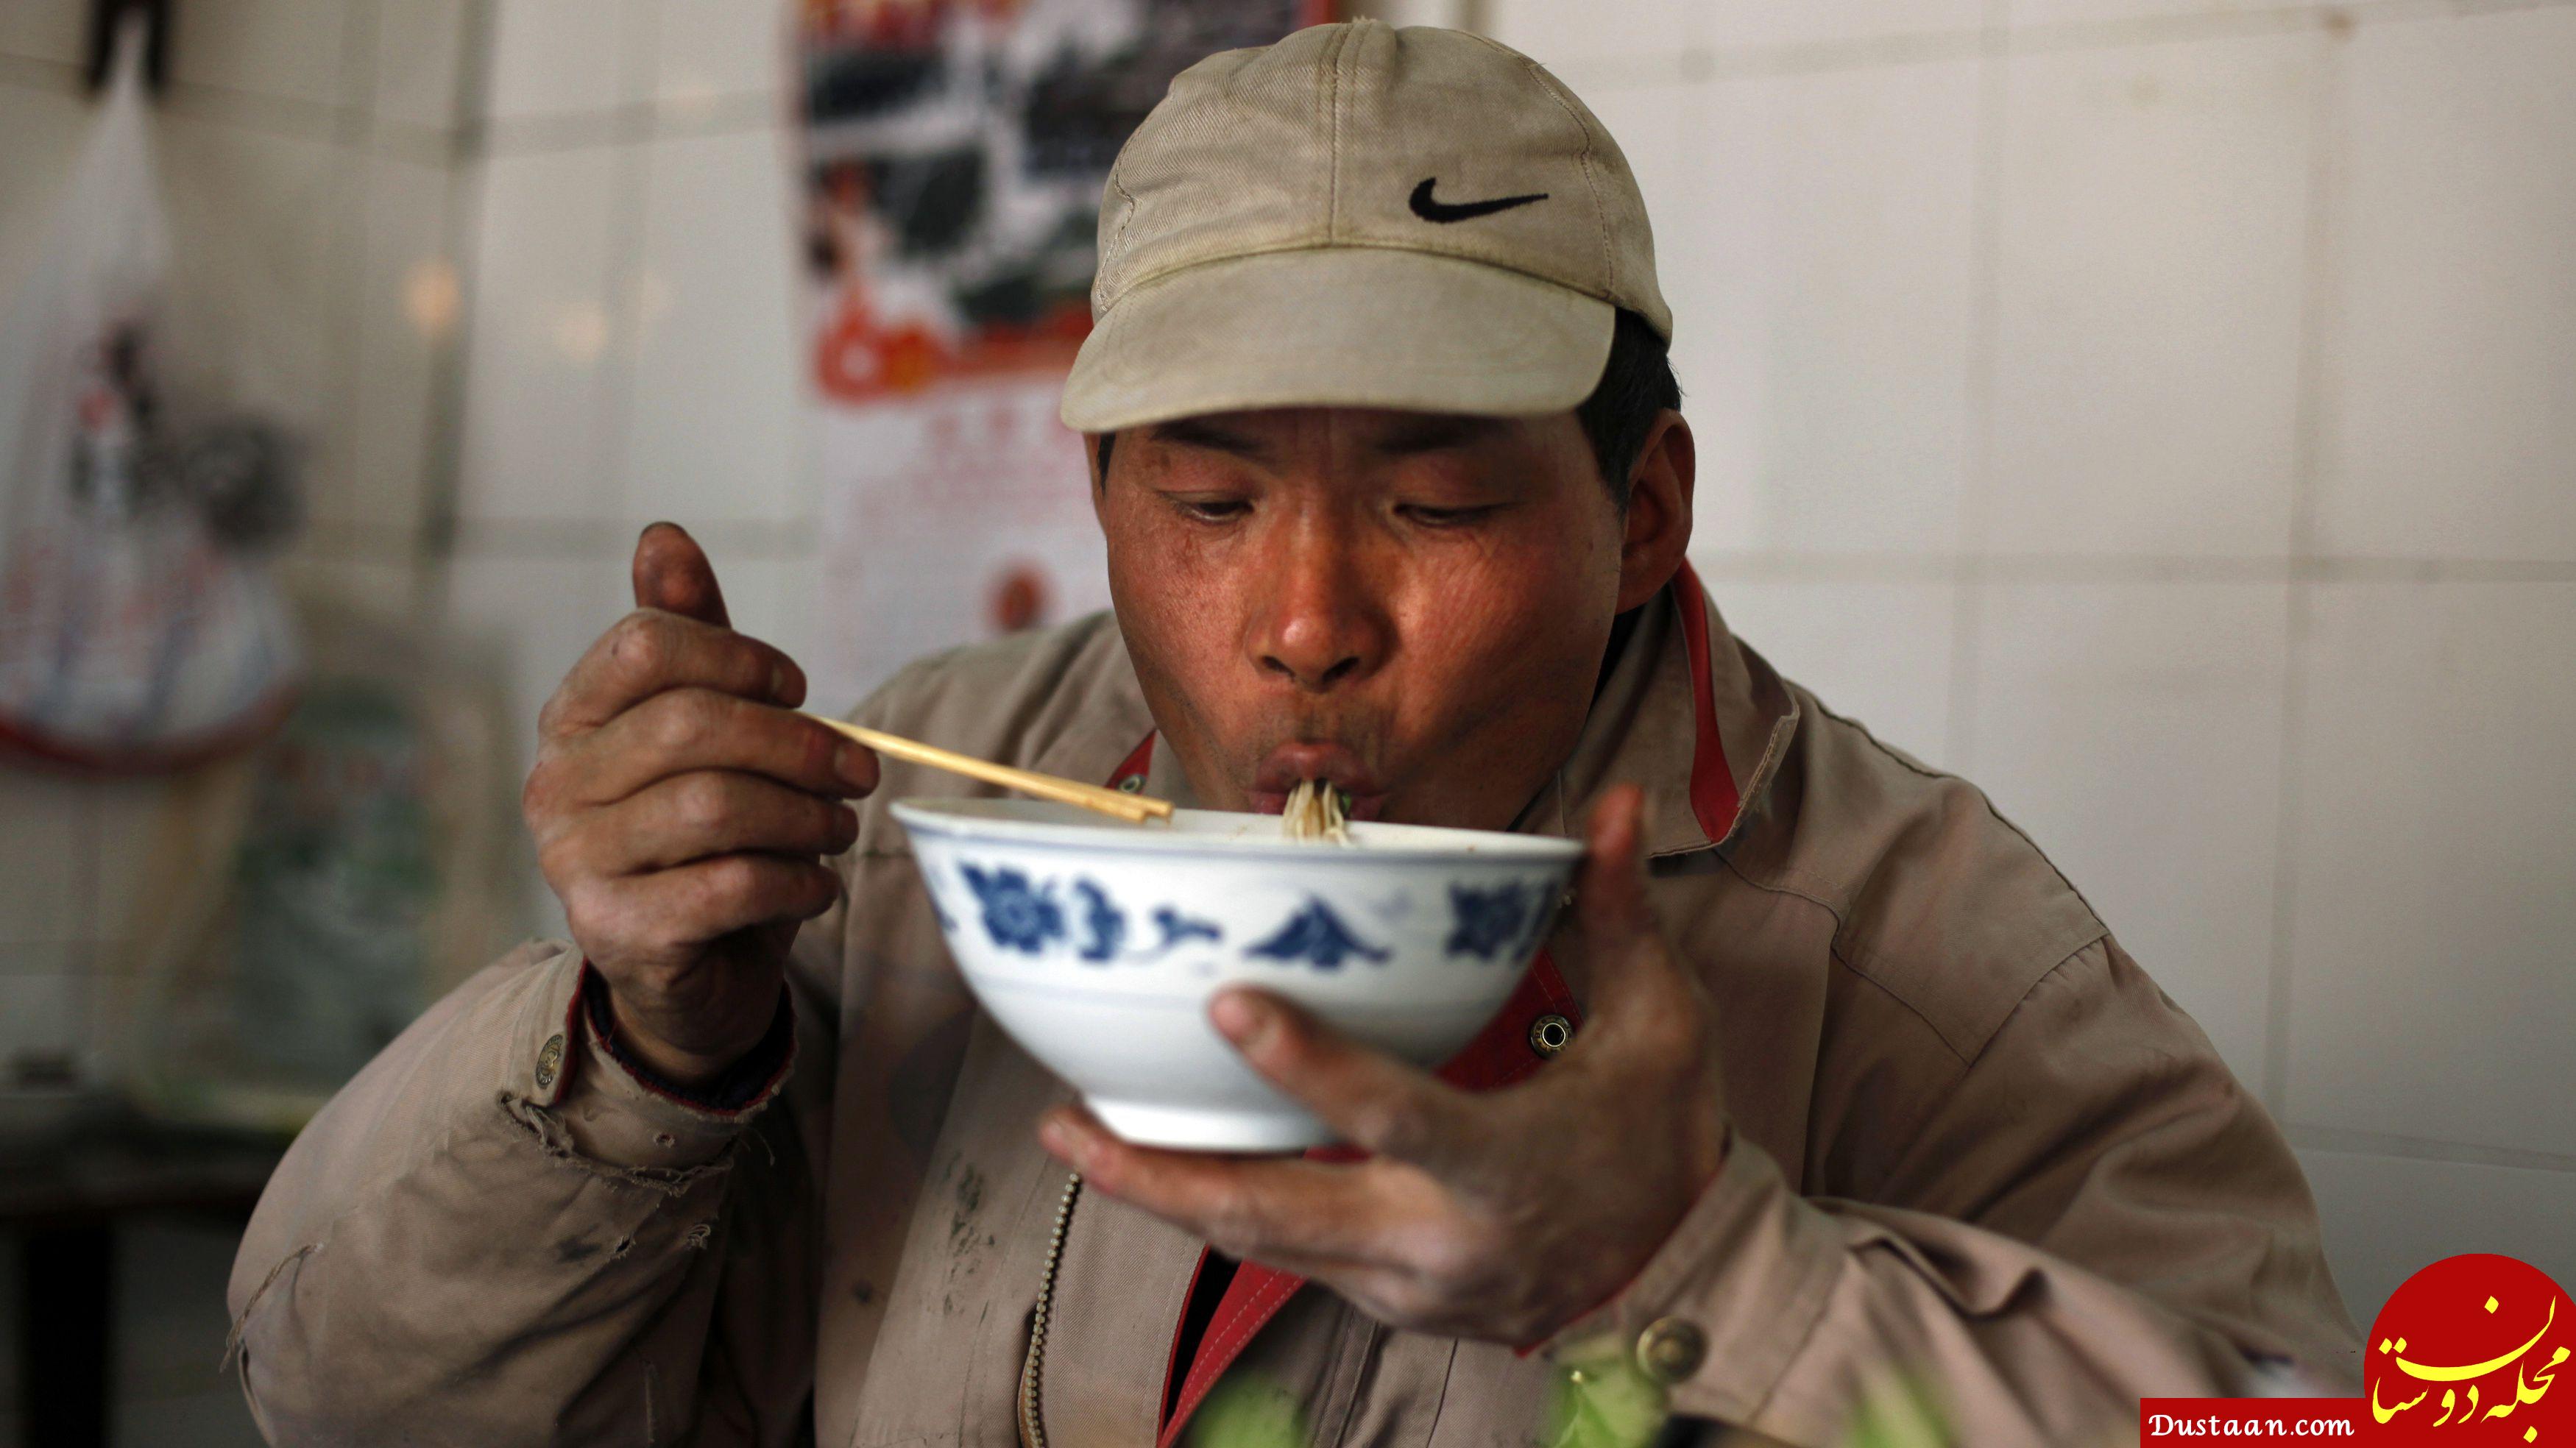 اقدام عجیب رستوران های چینی برای وابسته کردن مشتری! +عکس